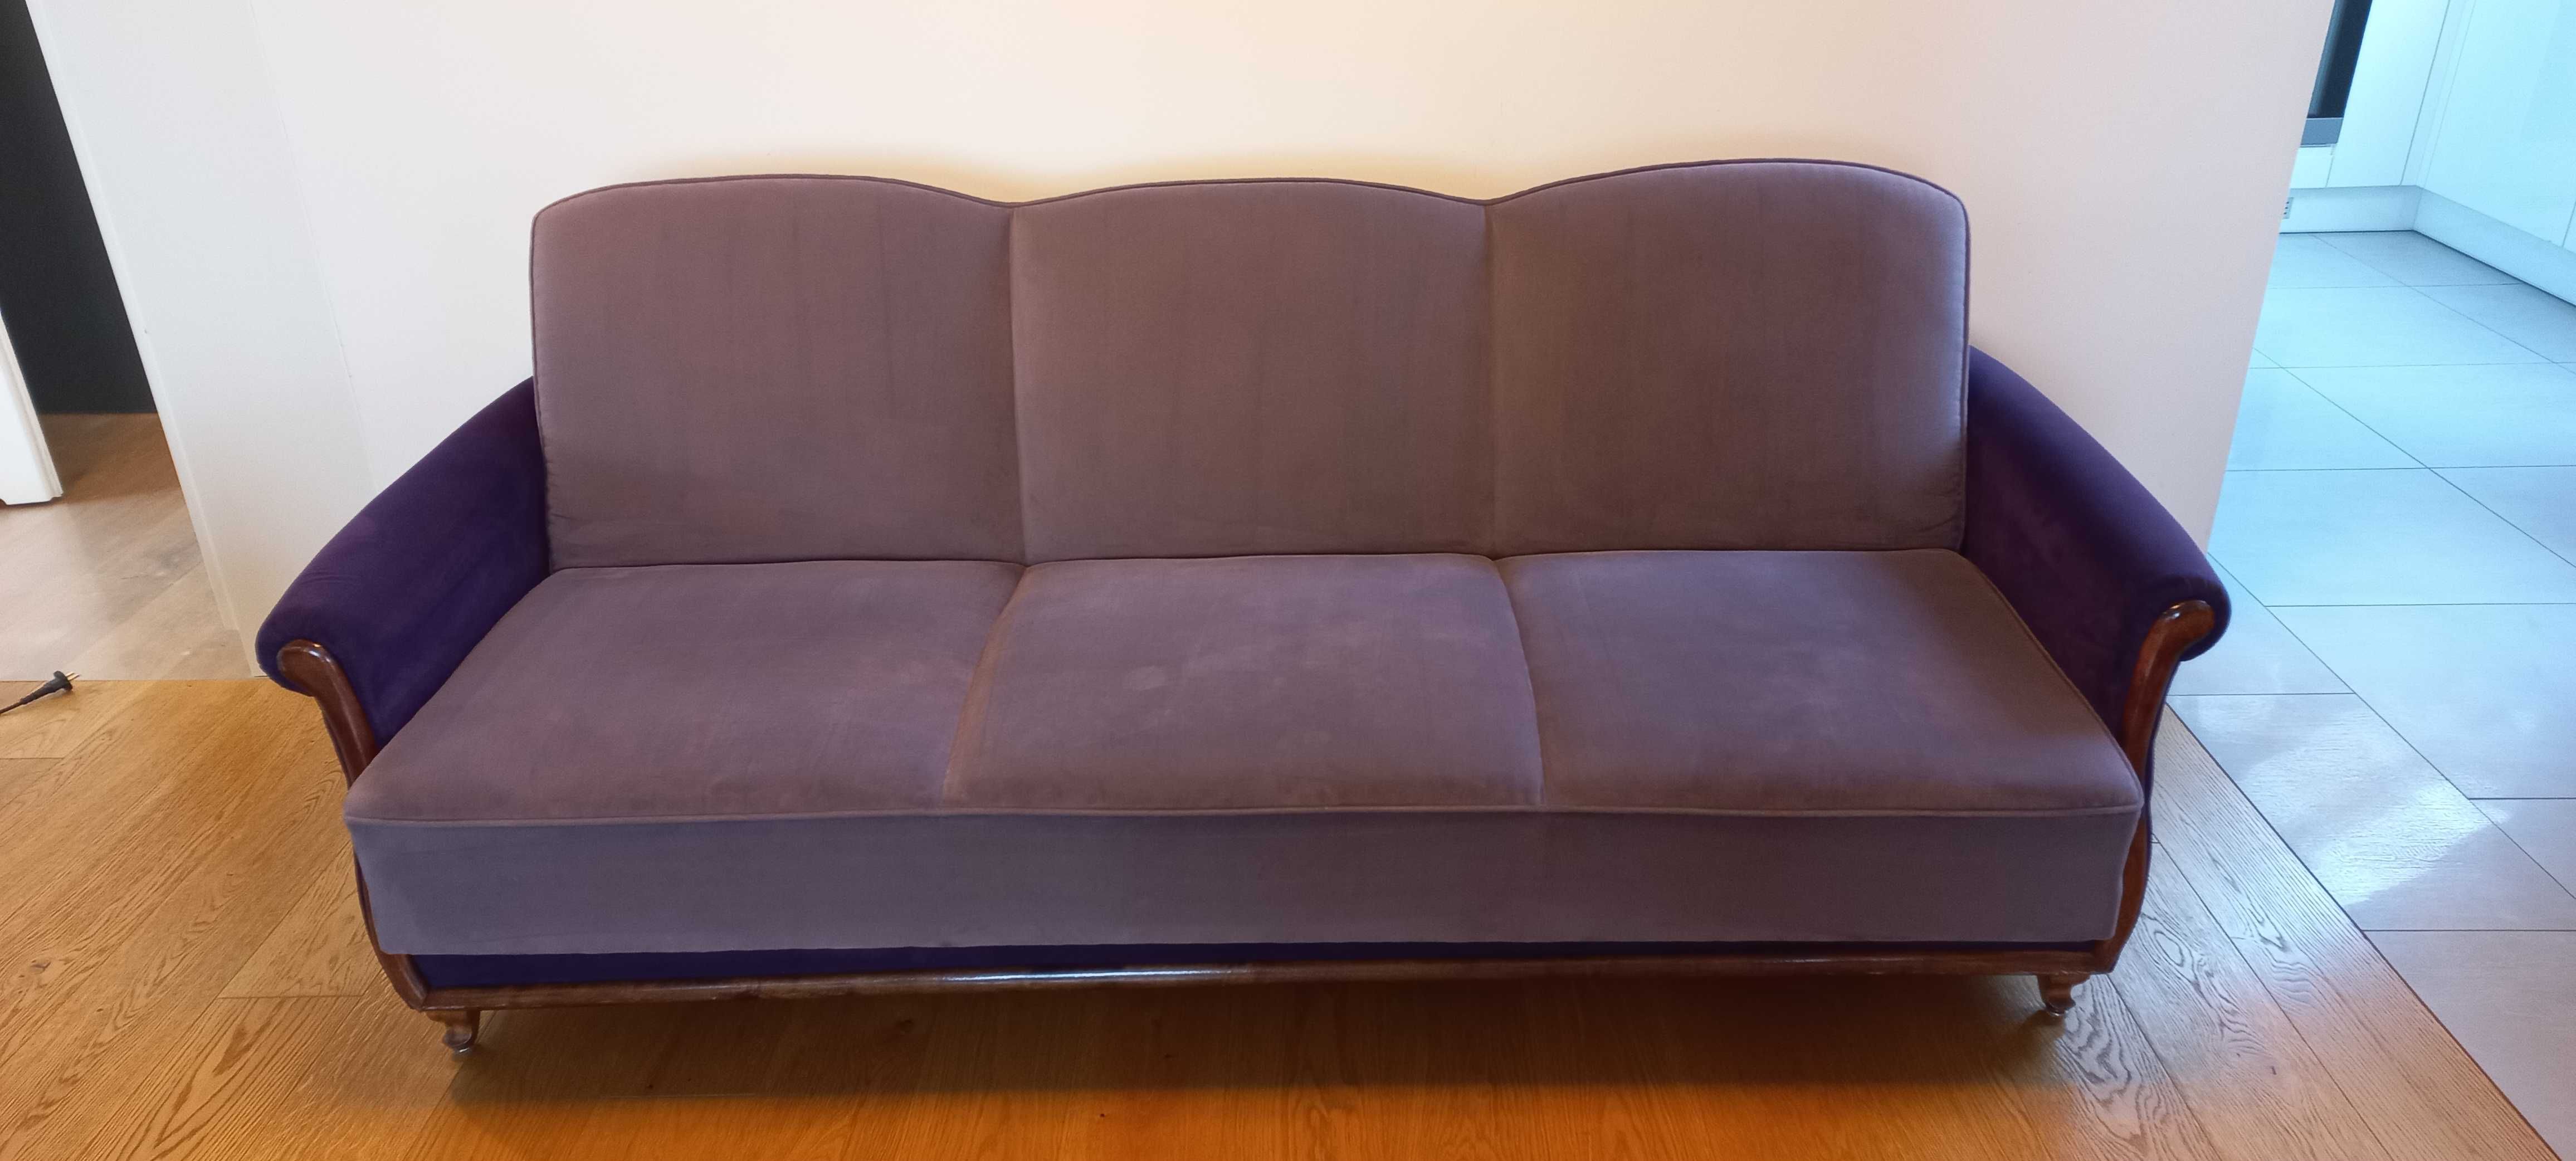 Kanapa sofa wersalka Lirka po renowacji -  nowe obicie